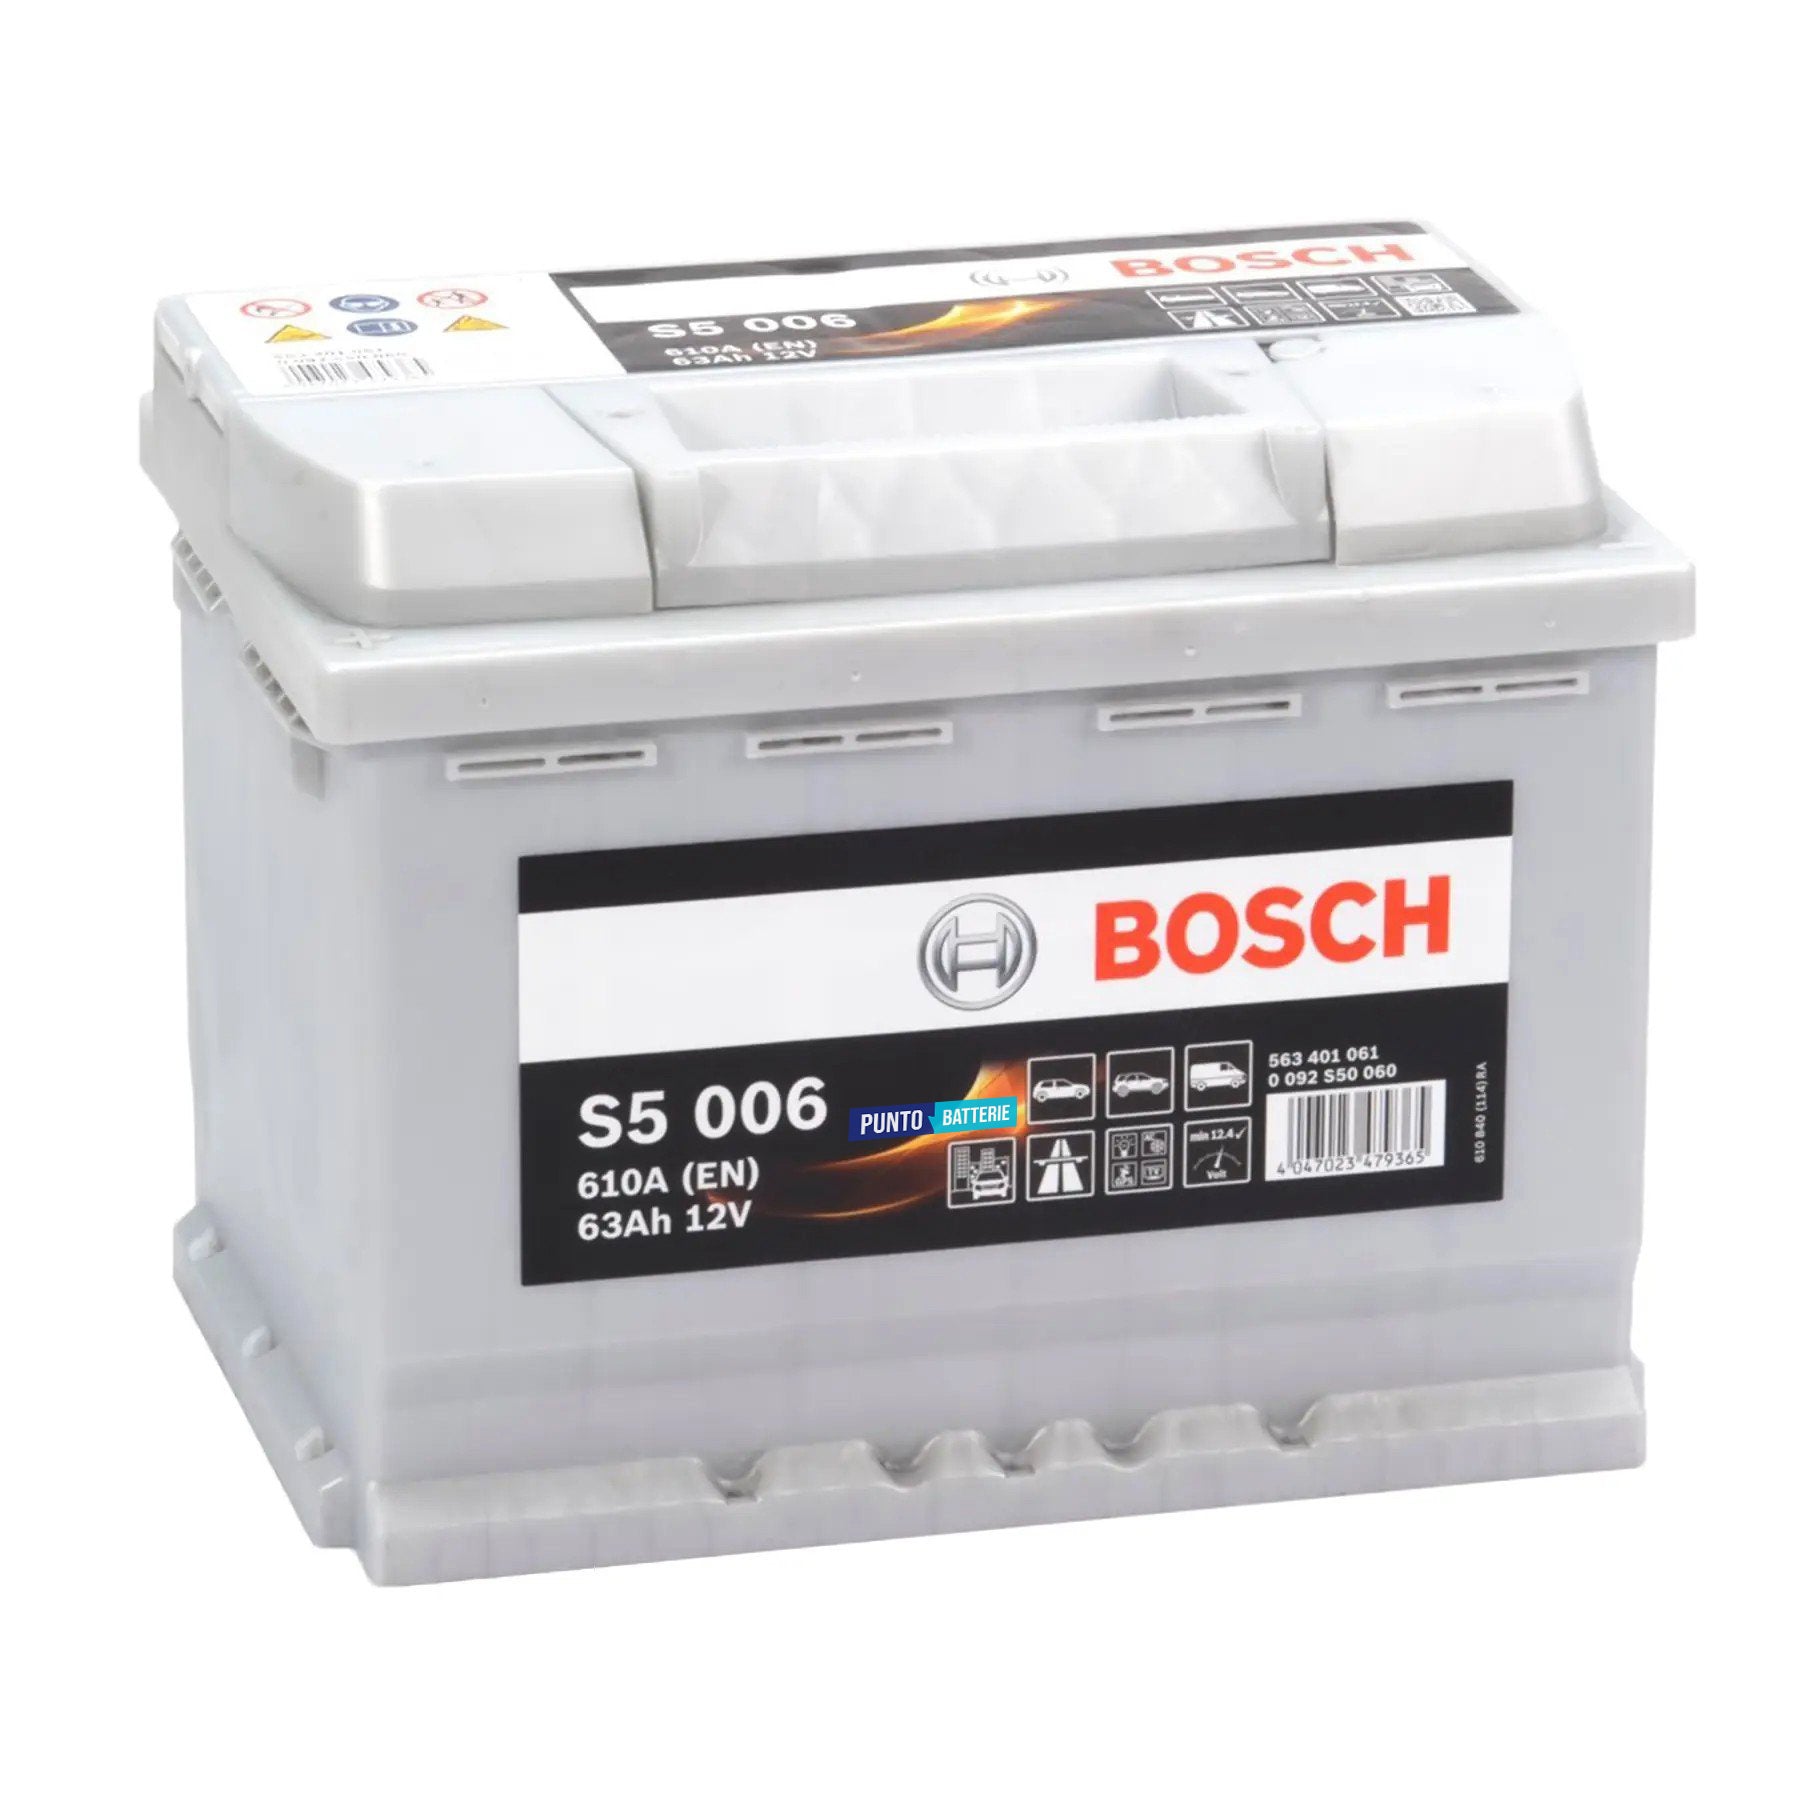 Batteria originale Bosch S5 S5 006, dimensioni 242 x 175 x 190, polo positivo a sinistra, 12 volt, 63 amperora, 610 ampere. Batteria per auto e veicoli leggeri.